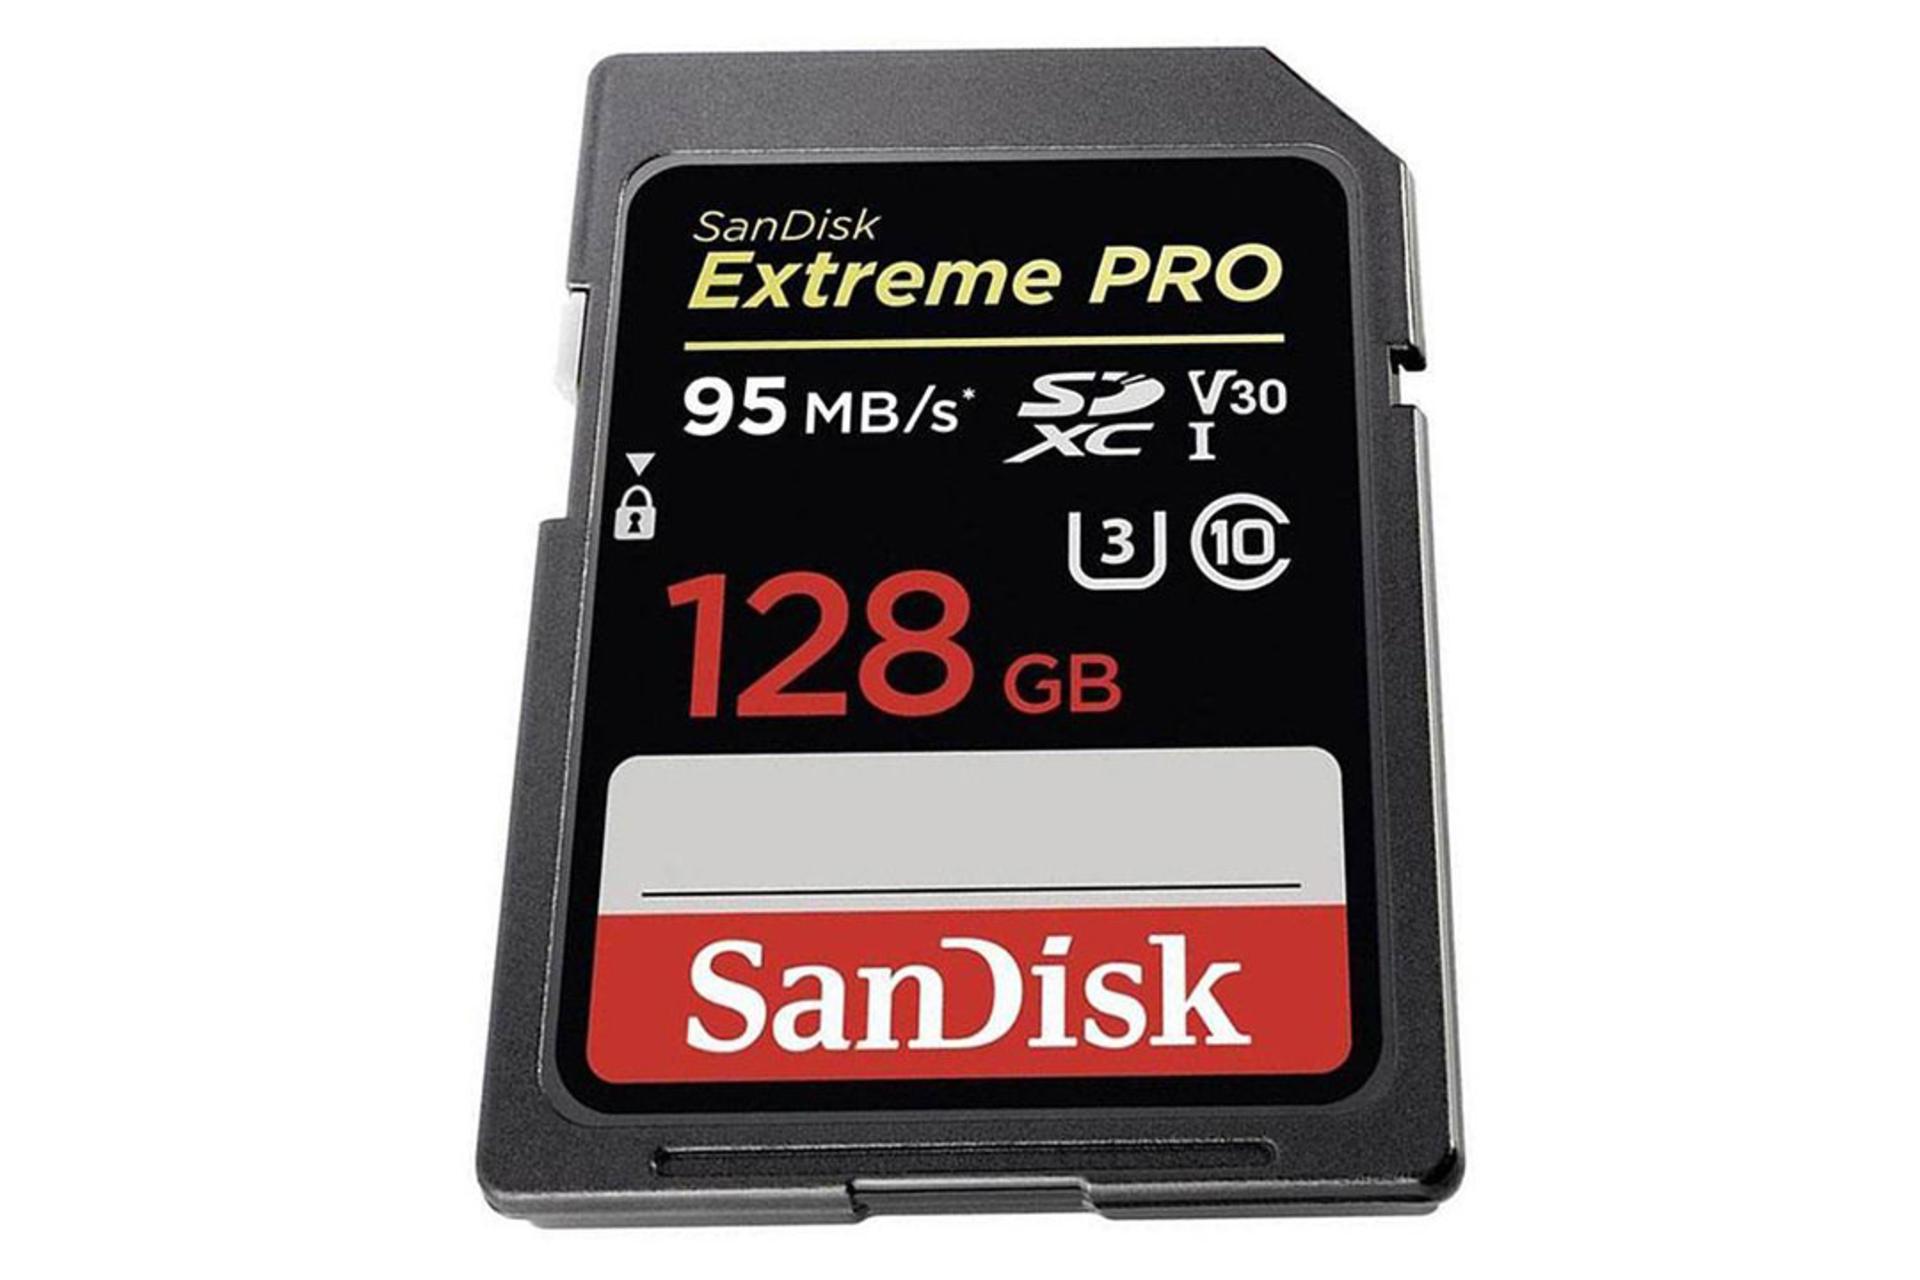 SanDisk Extreme Pro V30 SDHC Class 10 UHS-I U3 128GB